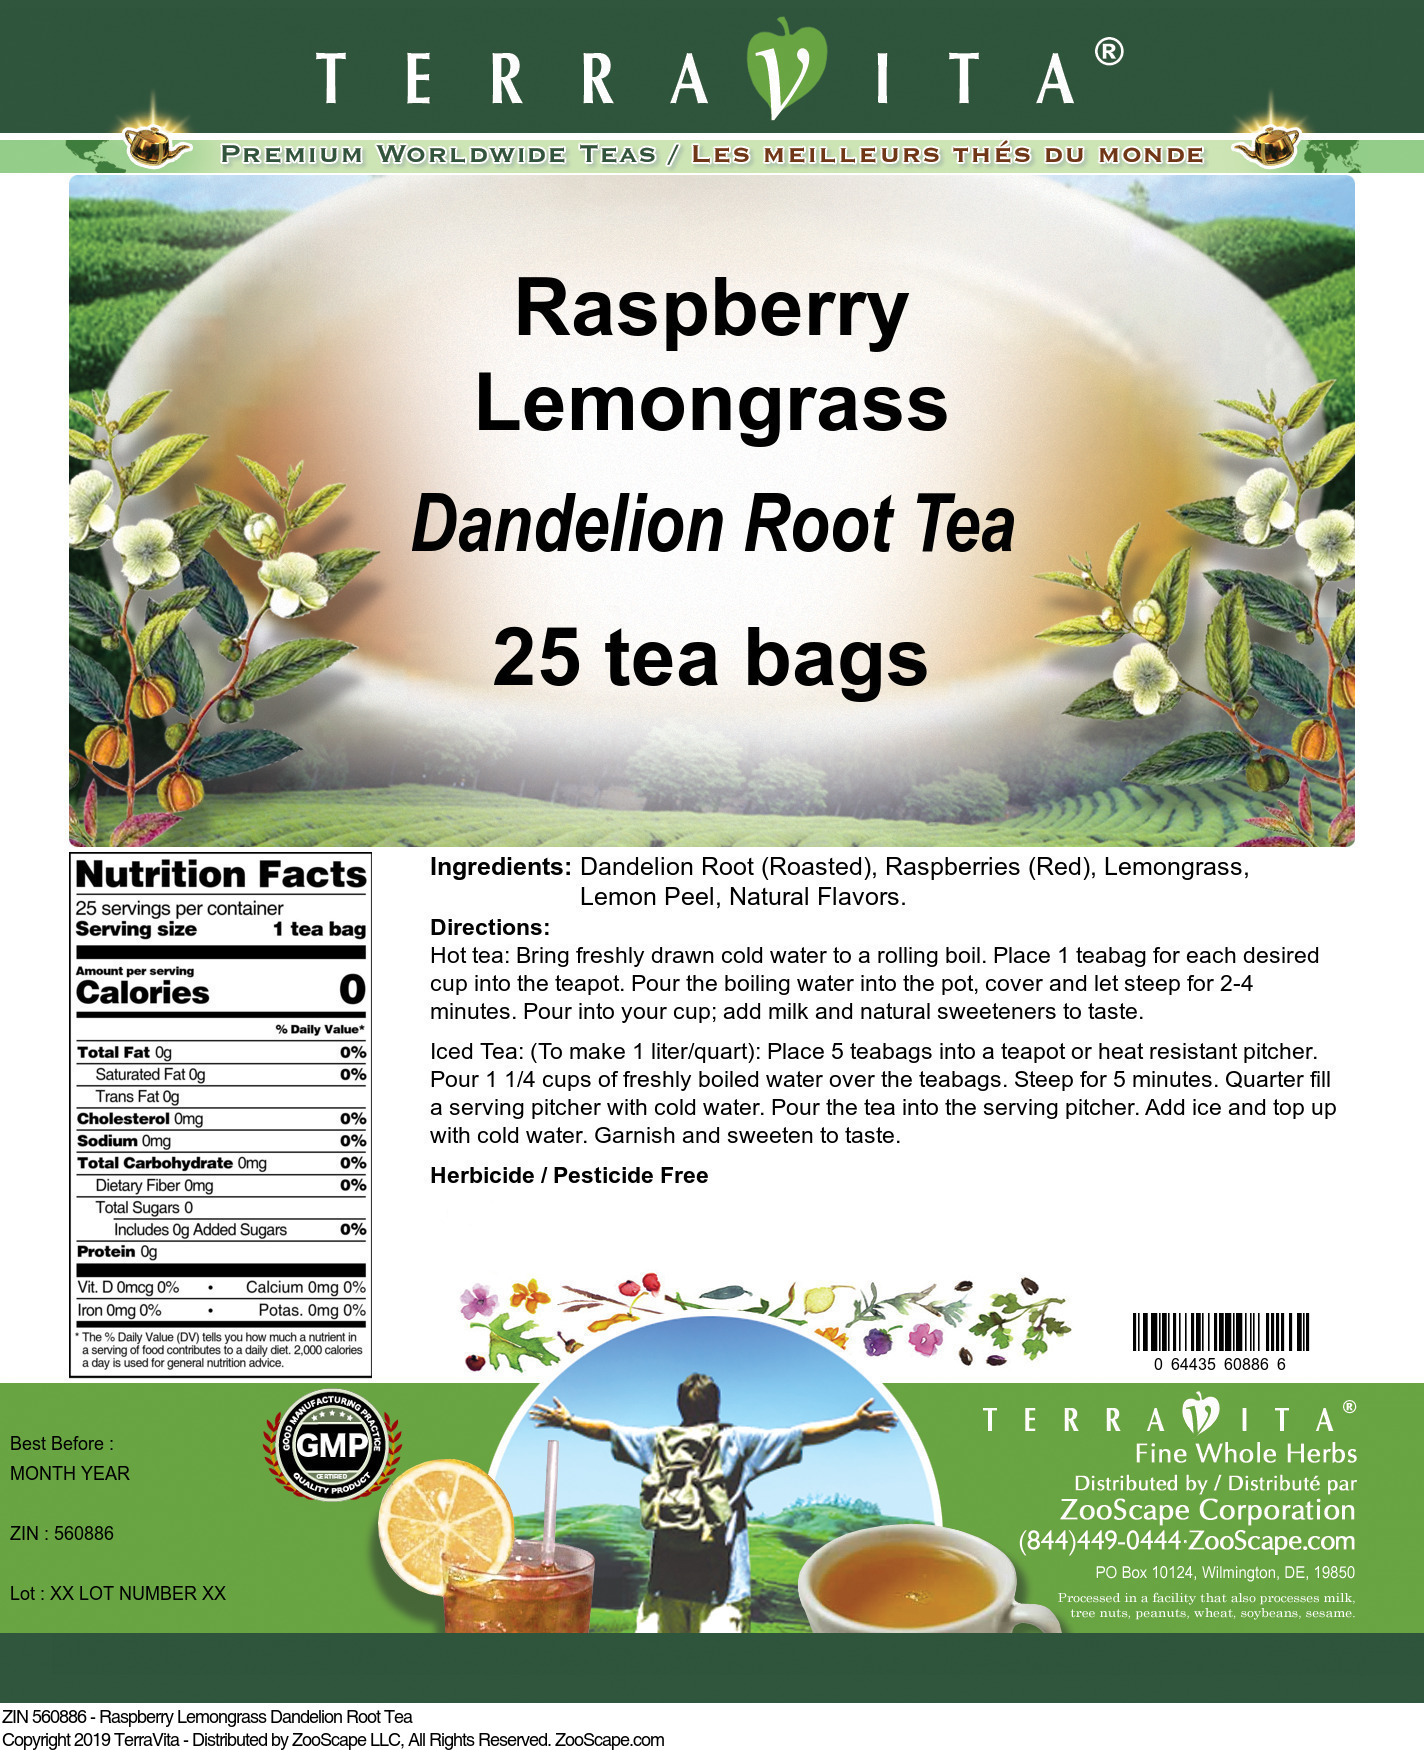 Raspberry Lemongrass Dandelion Root Tea - Label